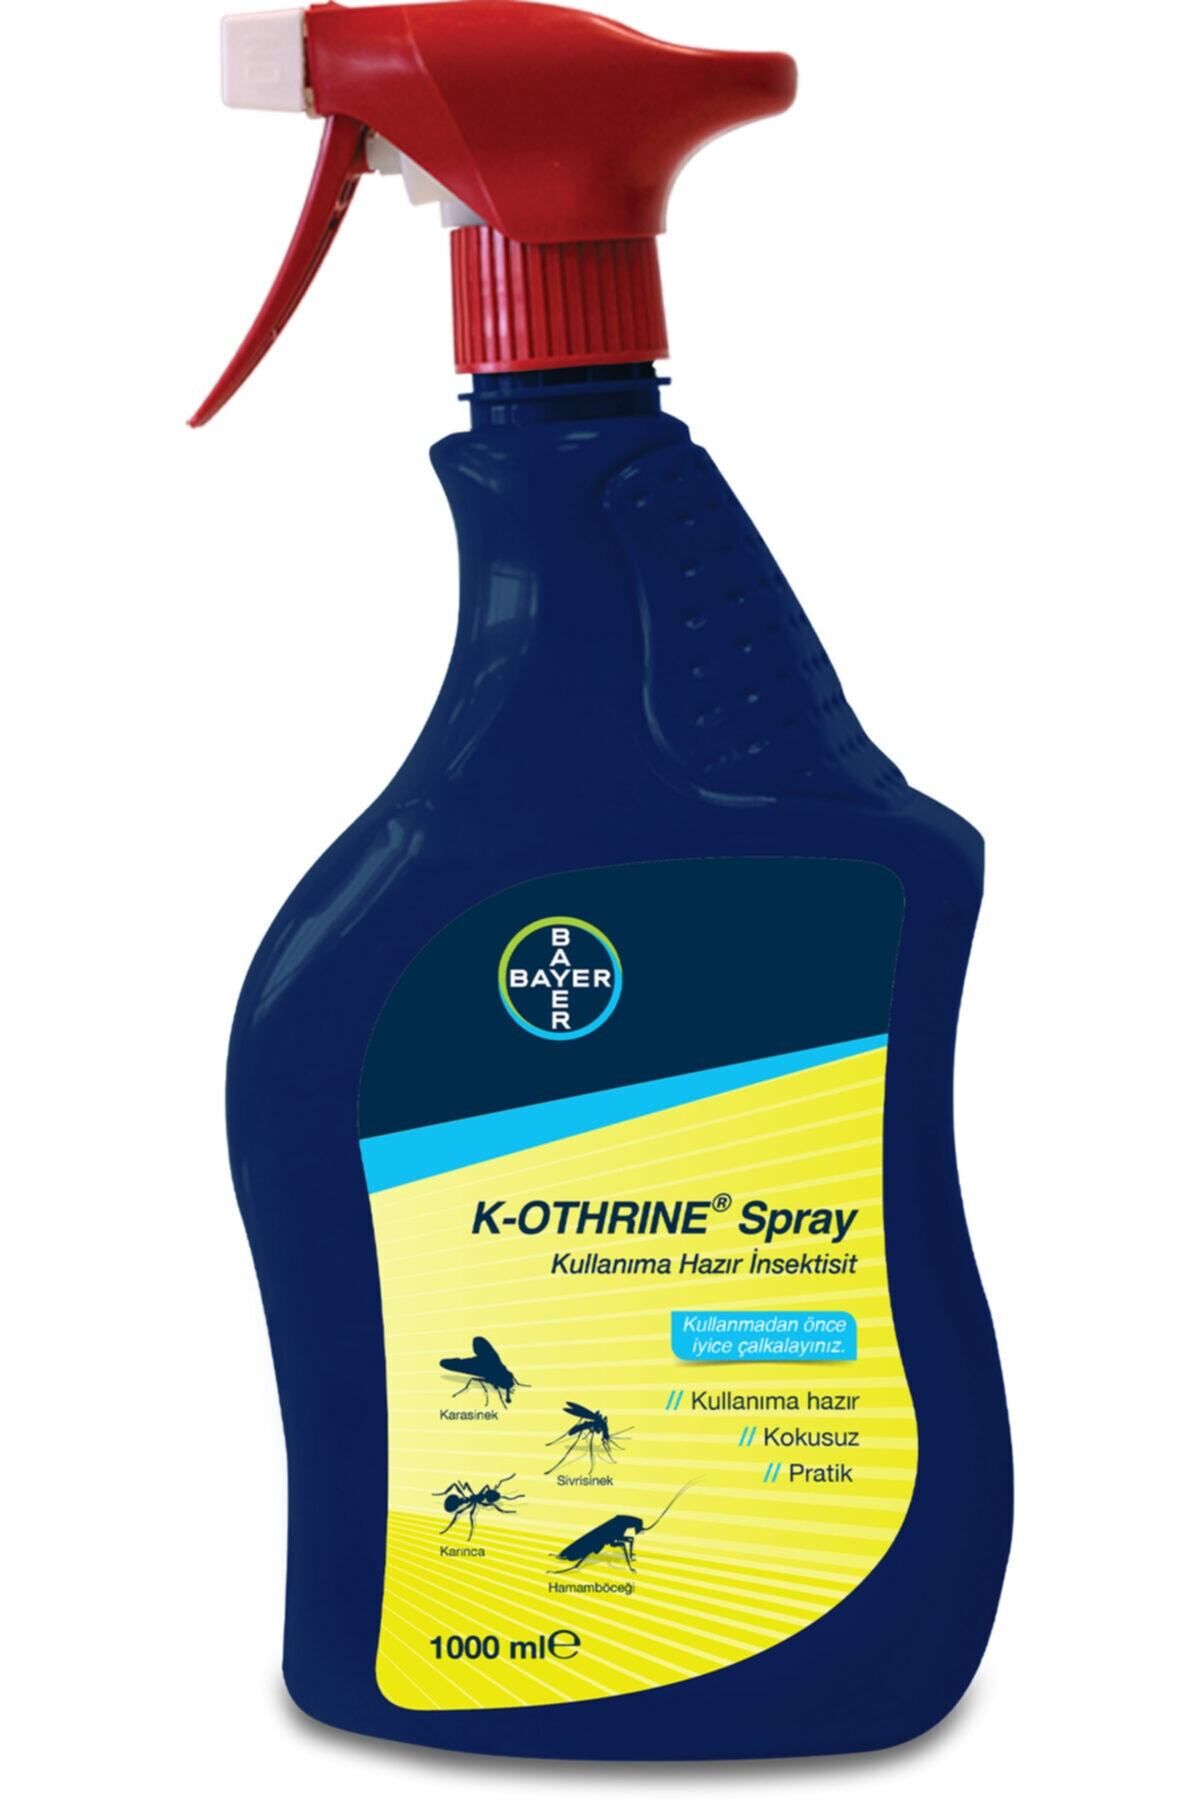 Genel Markalar Bayer K-othrine Al Böcek 1000 Ml Karınca Hamam Böceği Ilacı Kara Sinek Ilacı Böcek Ilacı